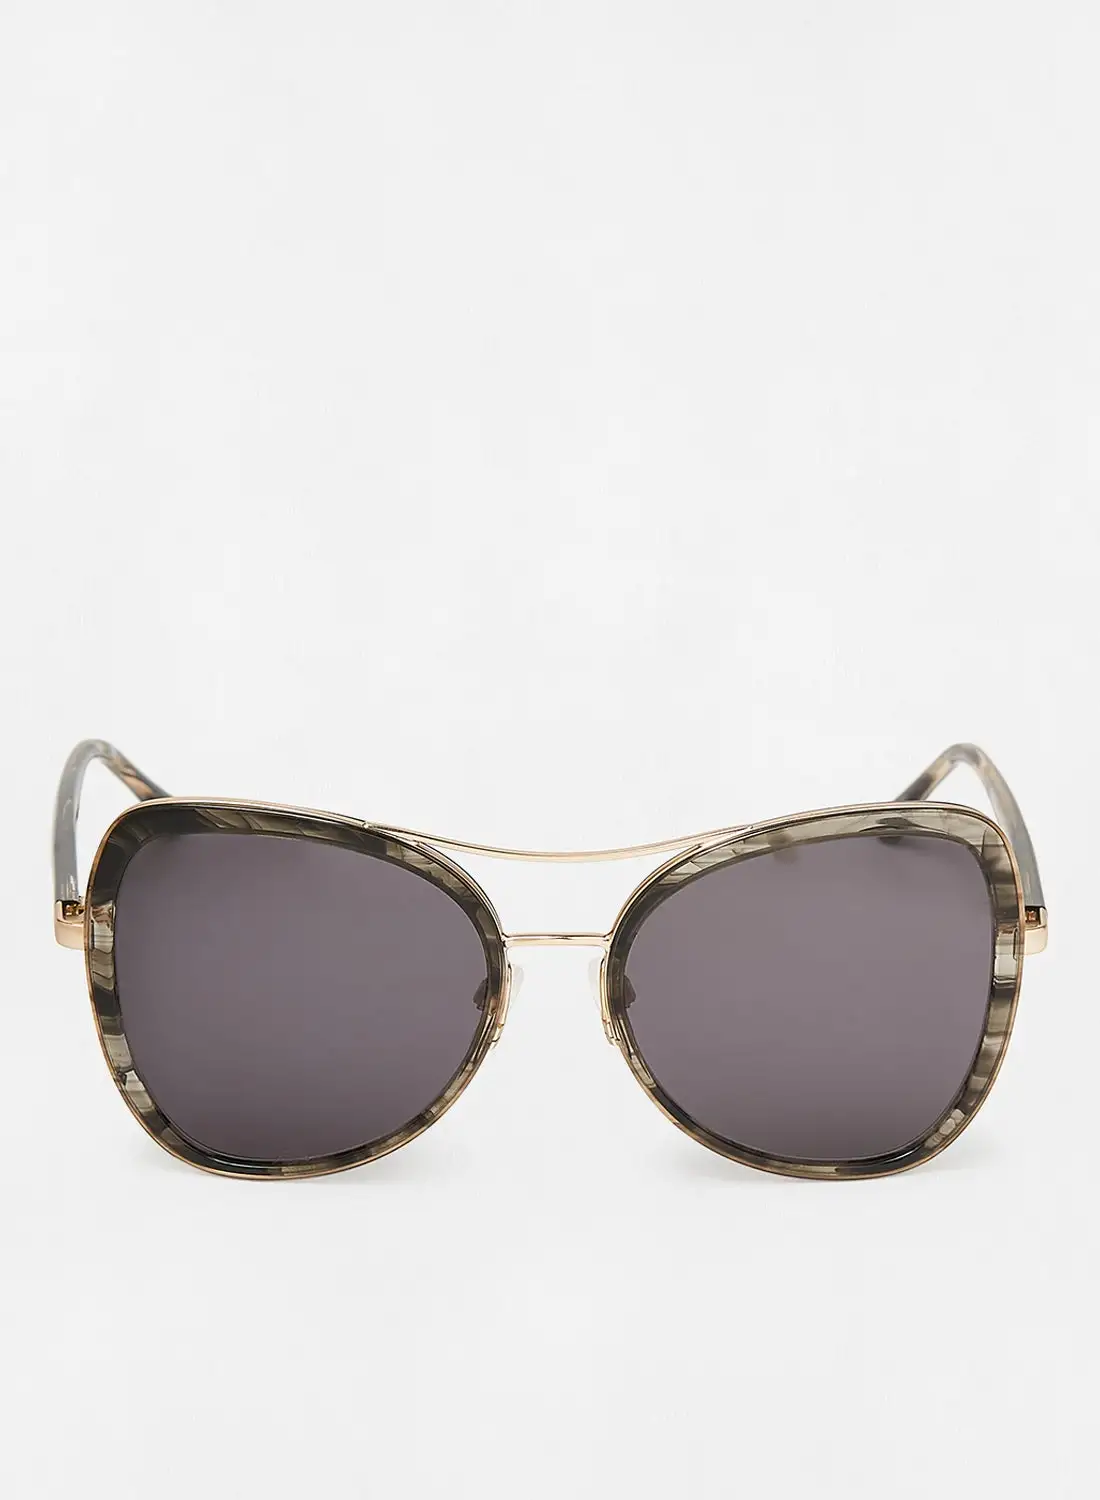 Donna Karan Women's Butterfly Sunglasses